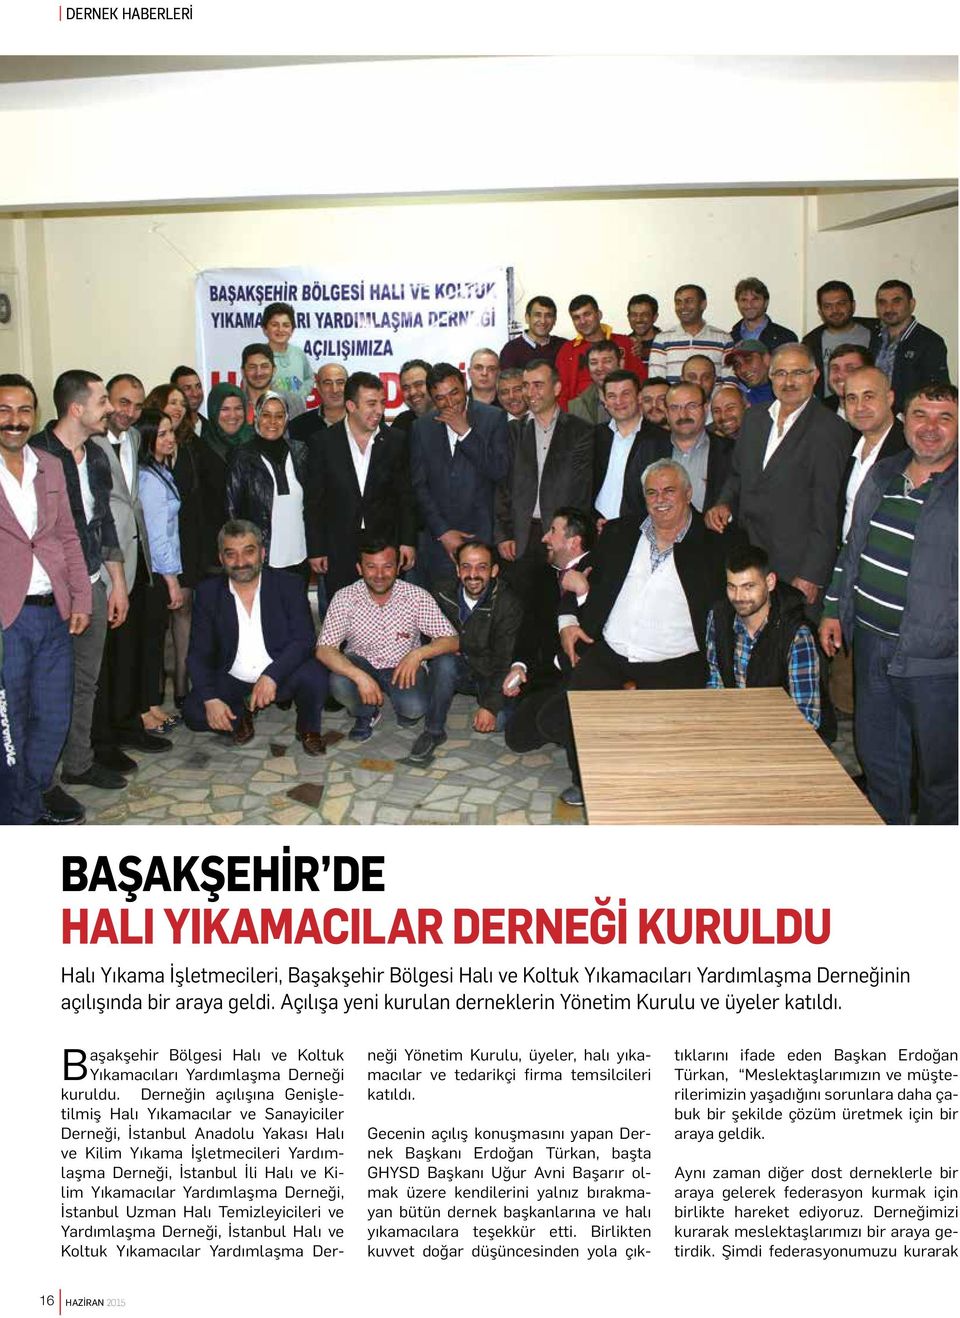 Derneğin açılışına Genişletilmiş Halı Yıkamacılar ve Sanayiciler Derneği, İstanbul Anadolu Yakası Halı ve Kilim Yıkama İşletmecileri Yardımlaşma Derneği, İstanbul İli Halı ve Kilim Yıkamacılar